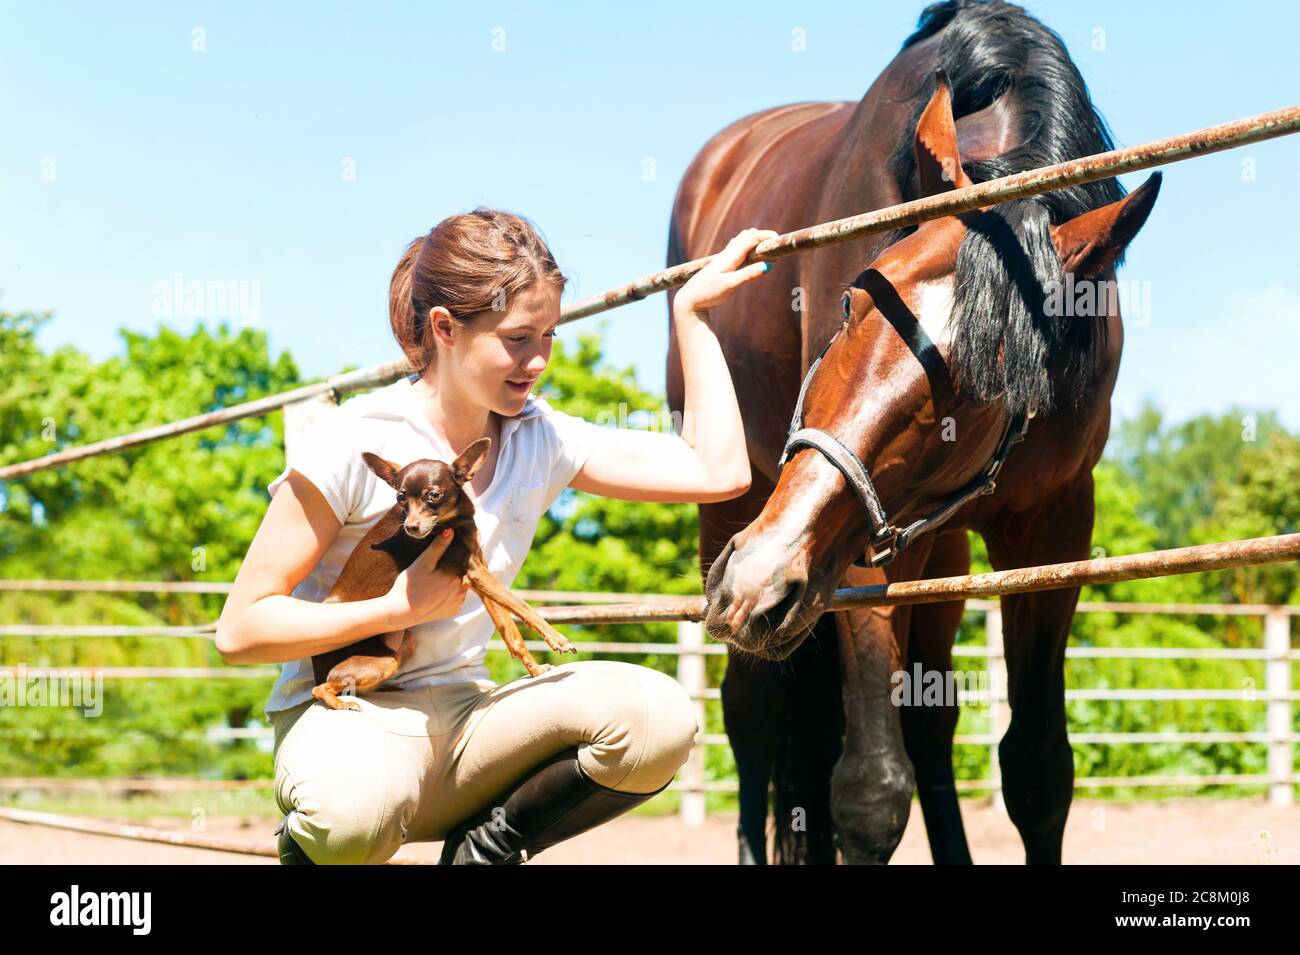 Giovane allegra adolescente ragazza rossa con il suo cavallo di castagno preferito e il suo cane piccolo. Immagine orizzontale esterna dai colori vivaci. Foto Stock